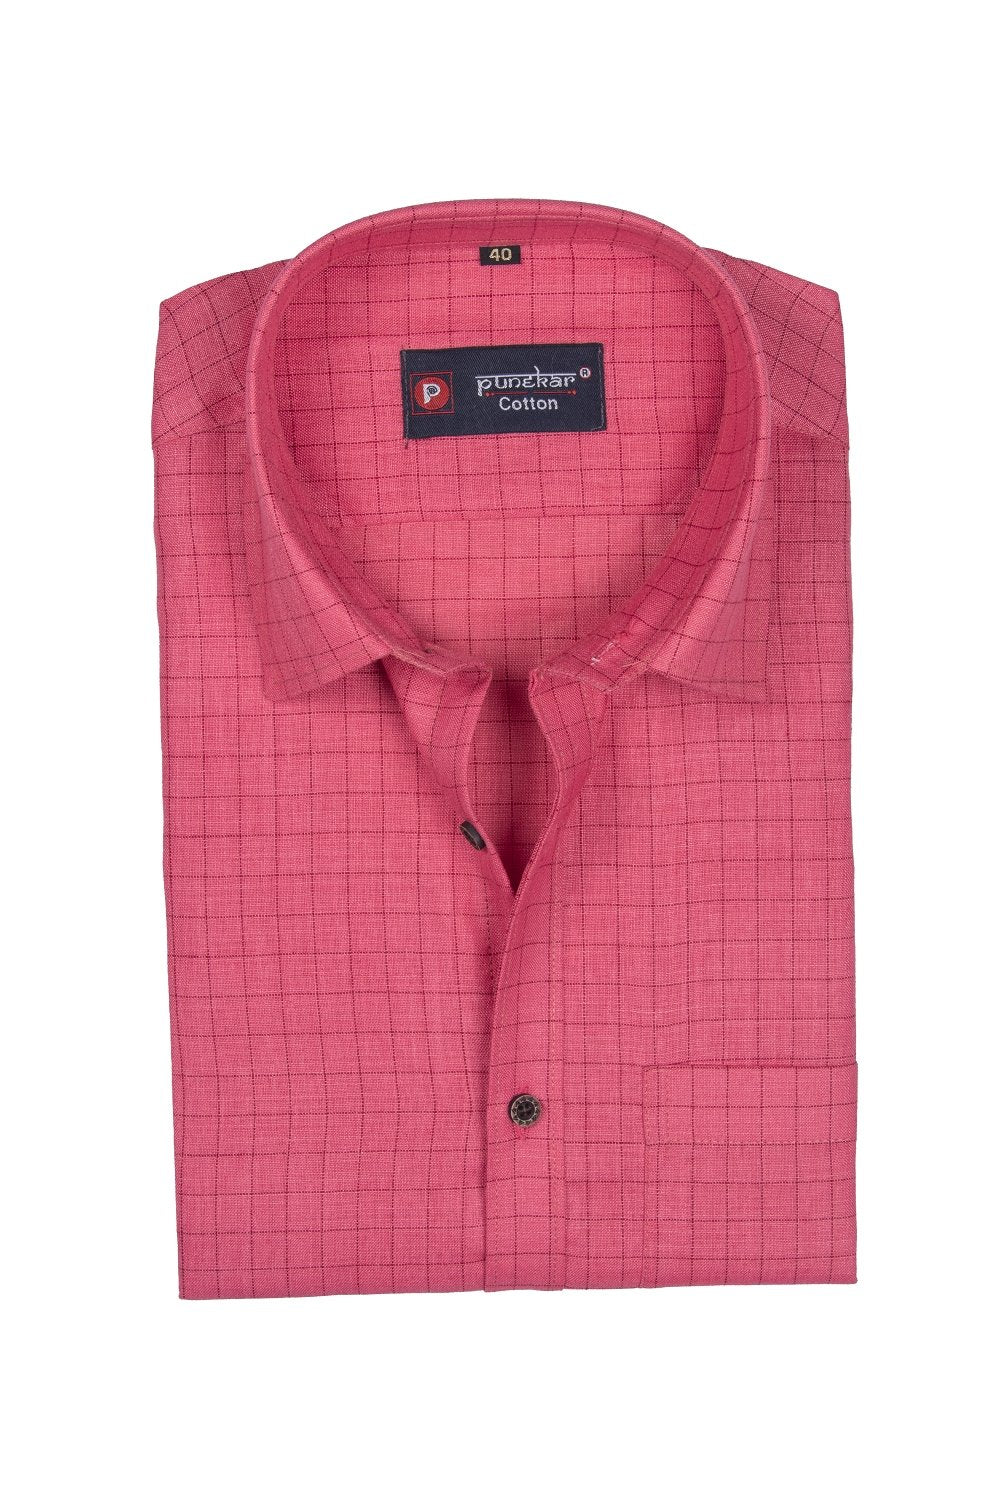 Punekar Cotton Pink Color Check Criss Cross Woven Cotton Shirt for Men&